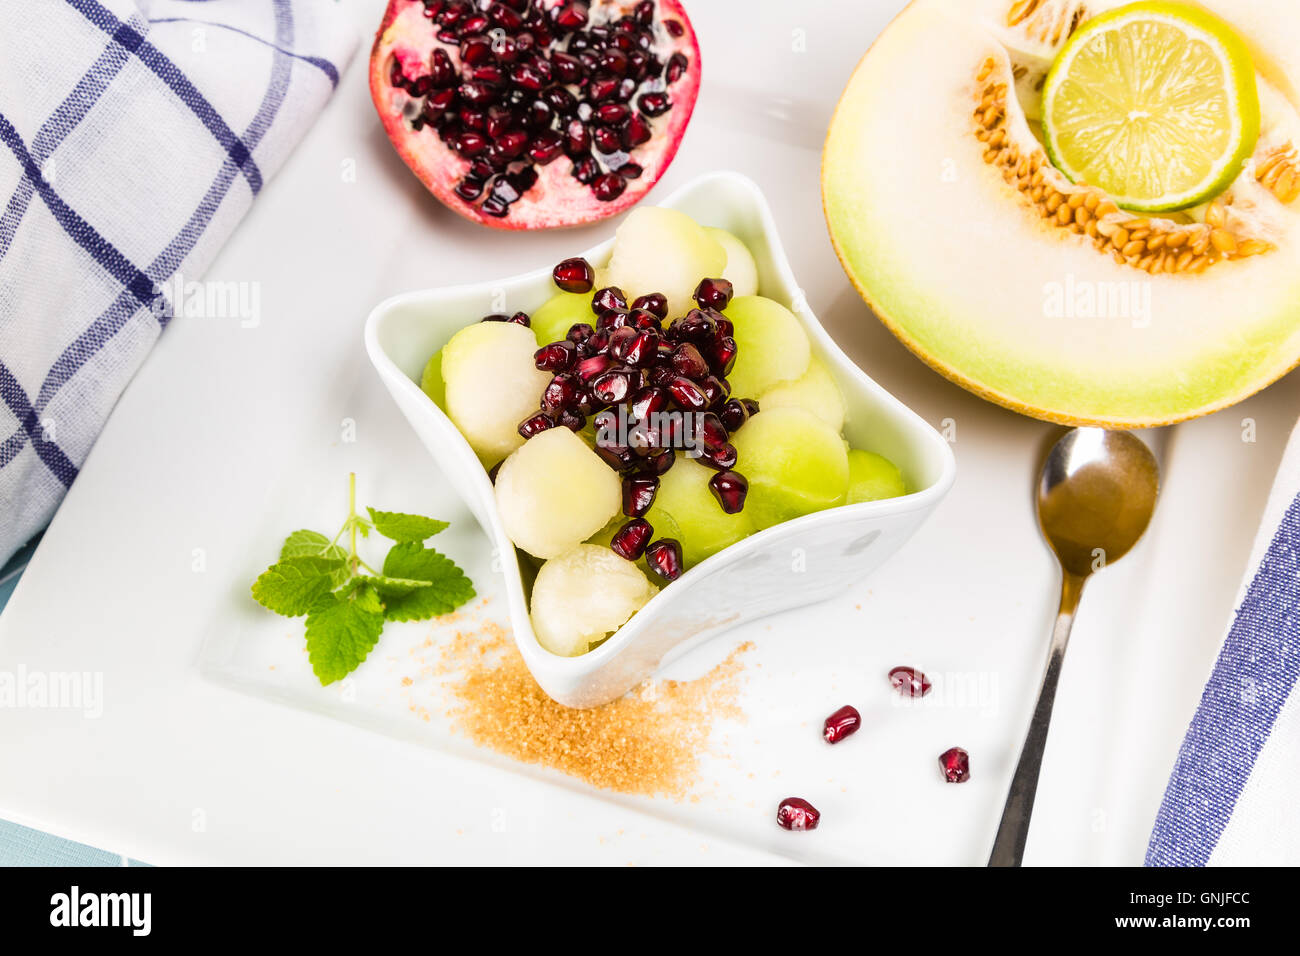 Sweet melon y las semillas de granada como un postre refrescante Foto de stock